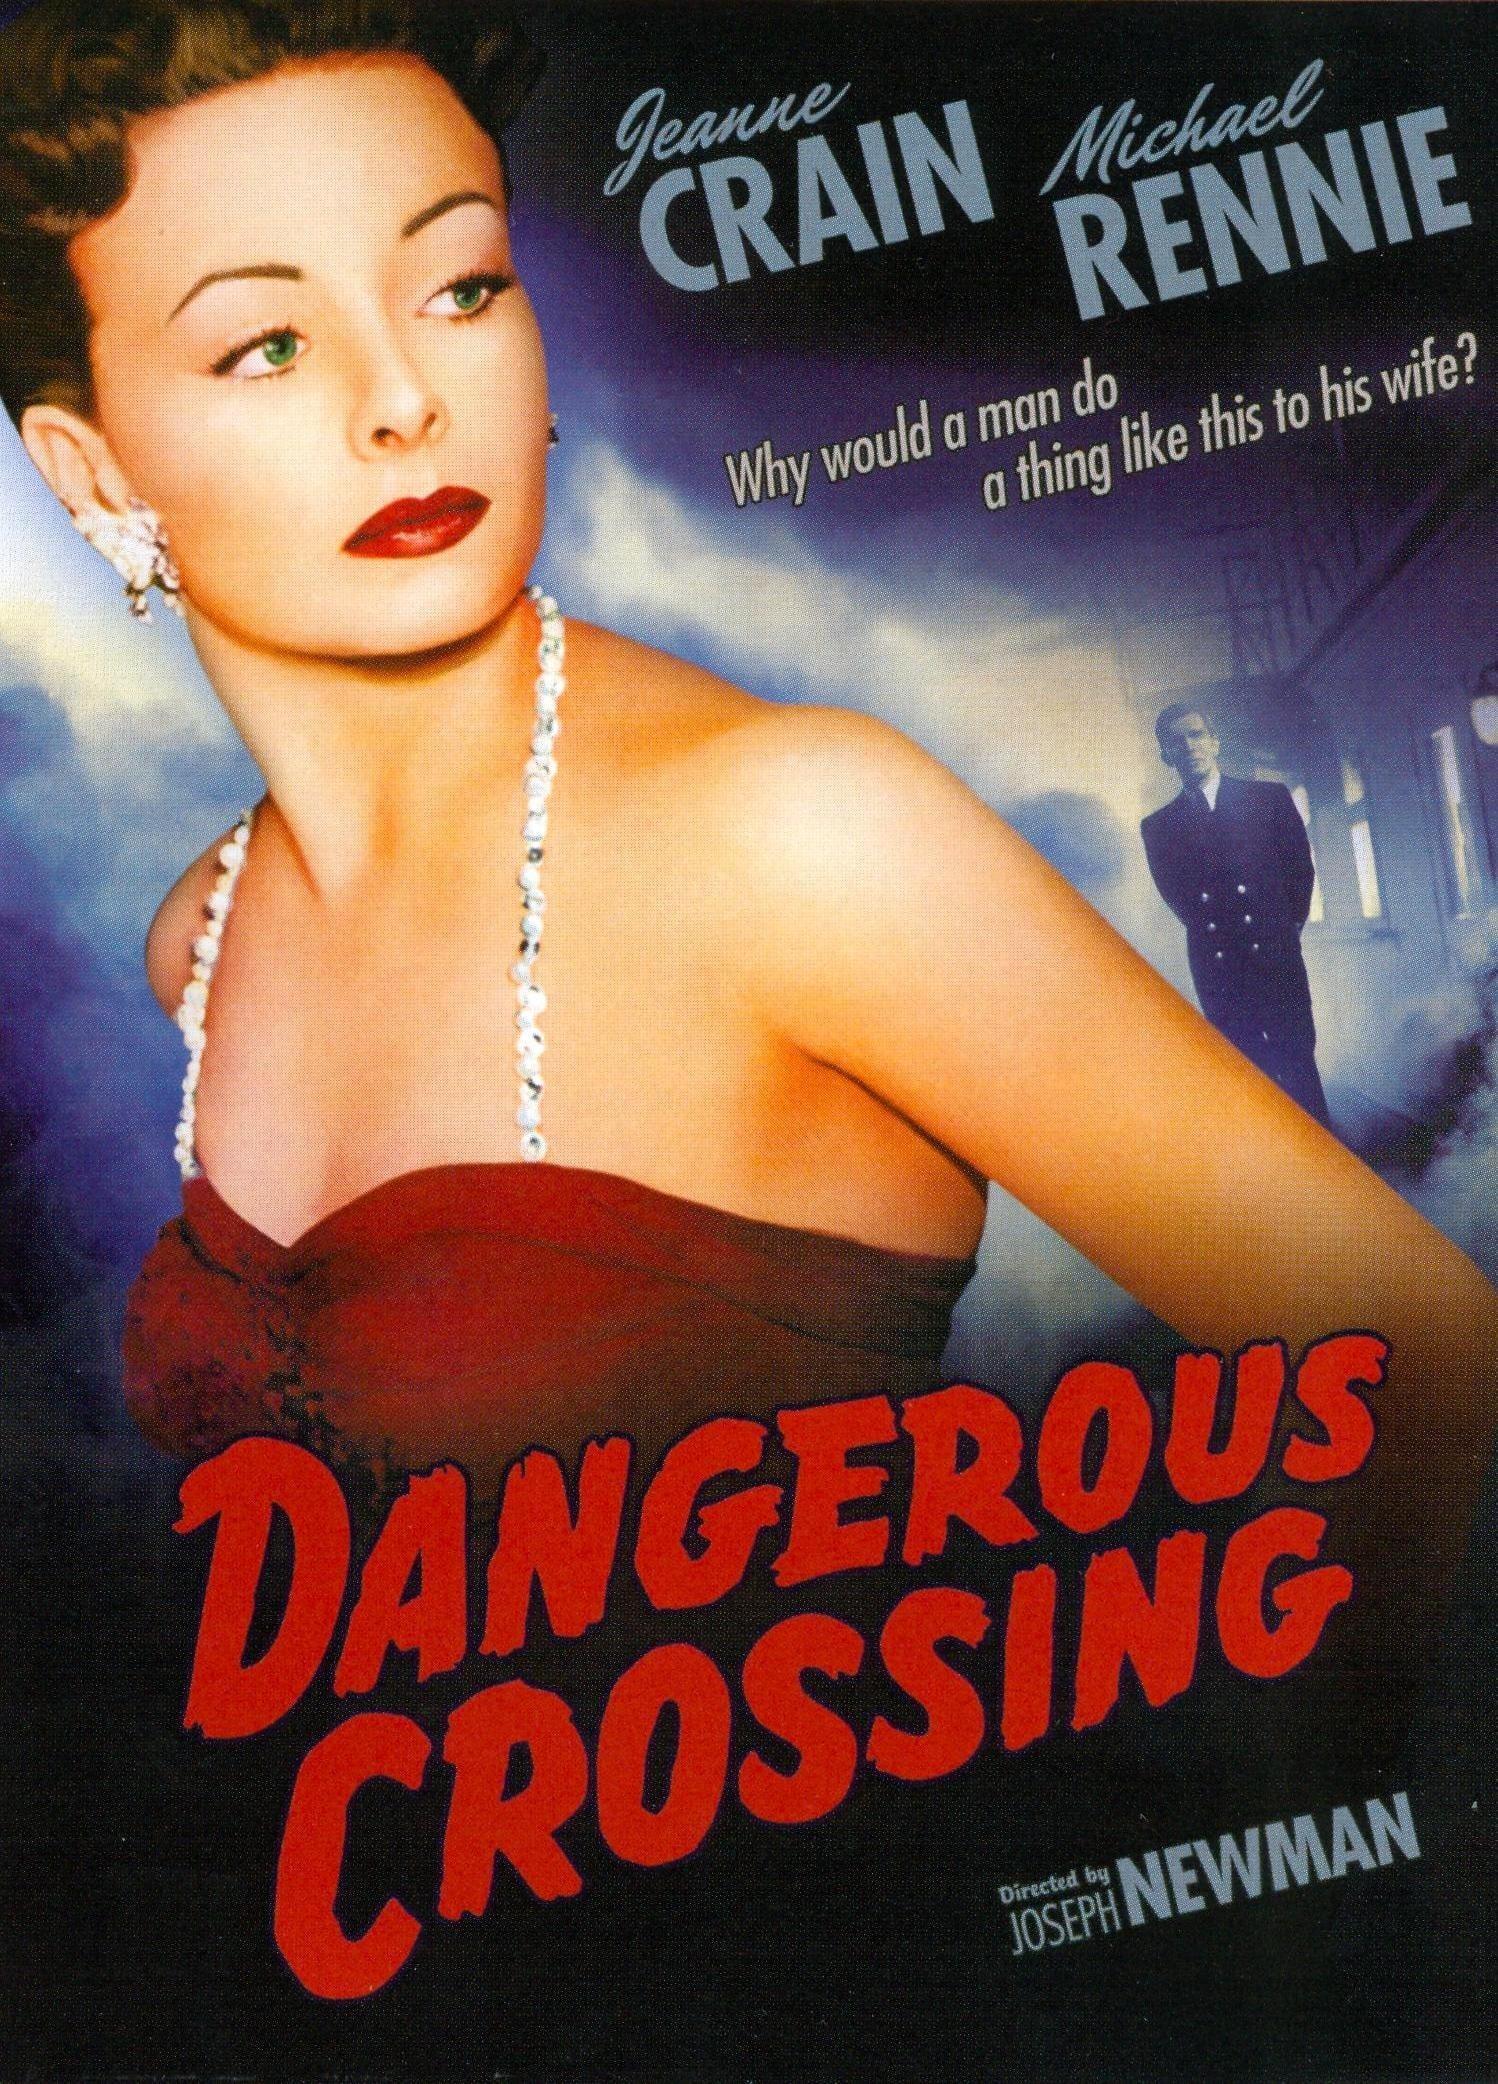 Dangerous Crossing poster